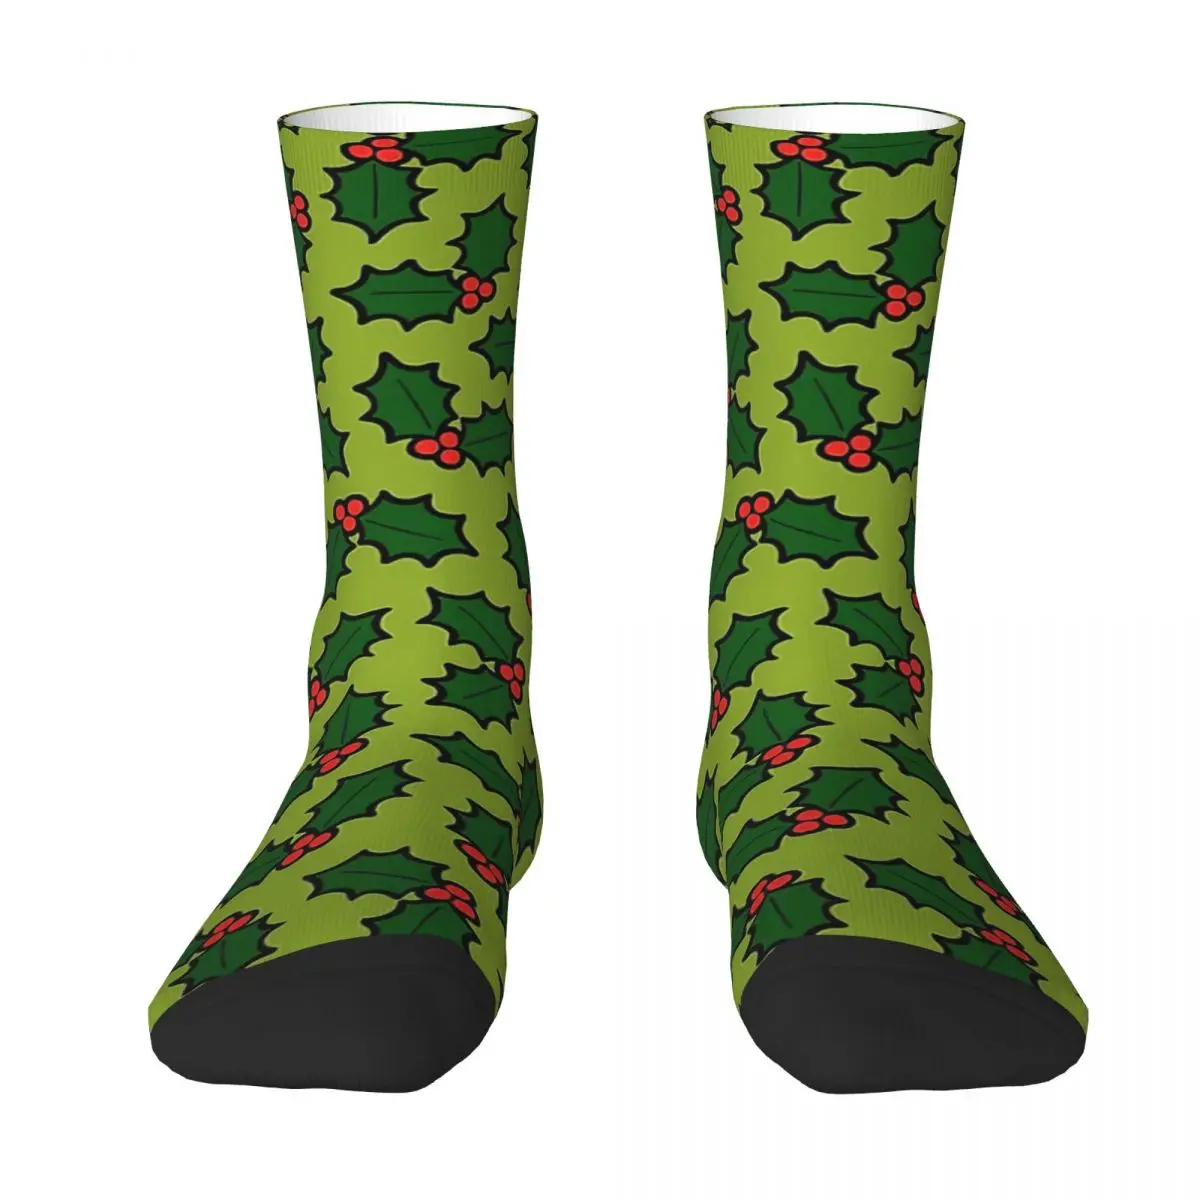 Holly Leaves And Berries Pattern In Light Green Adult Socks,Unisex socks,men Socks women Socks